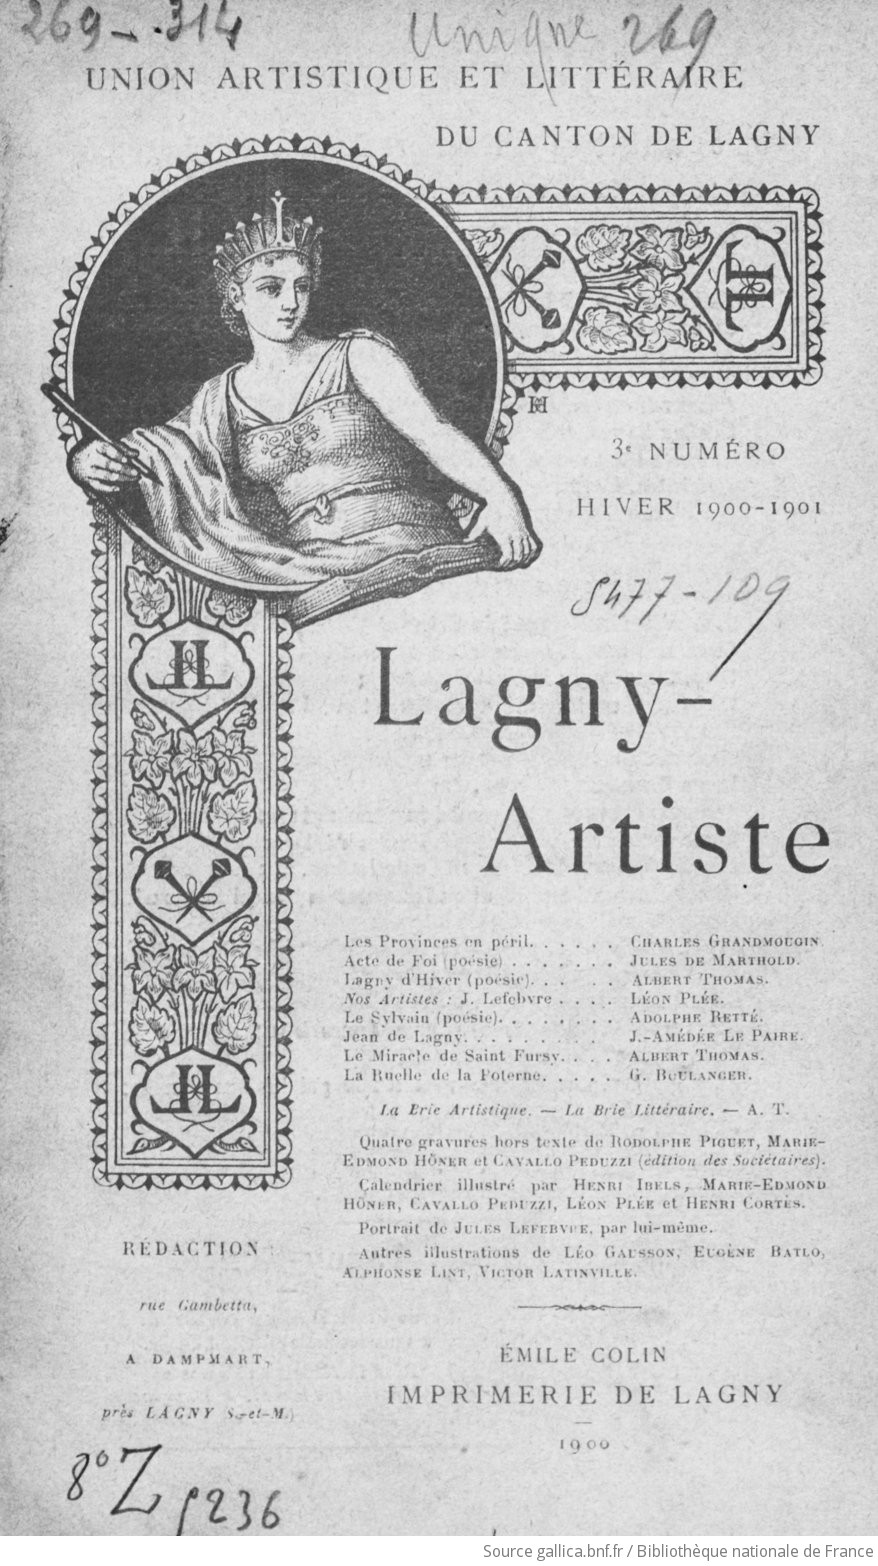 Lagny-artiste